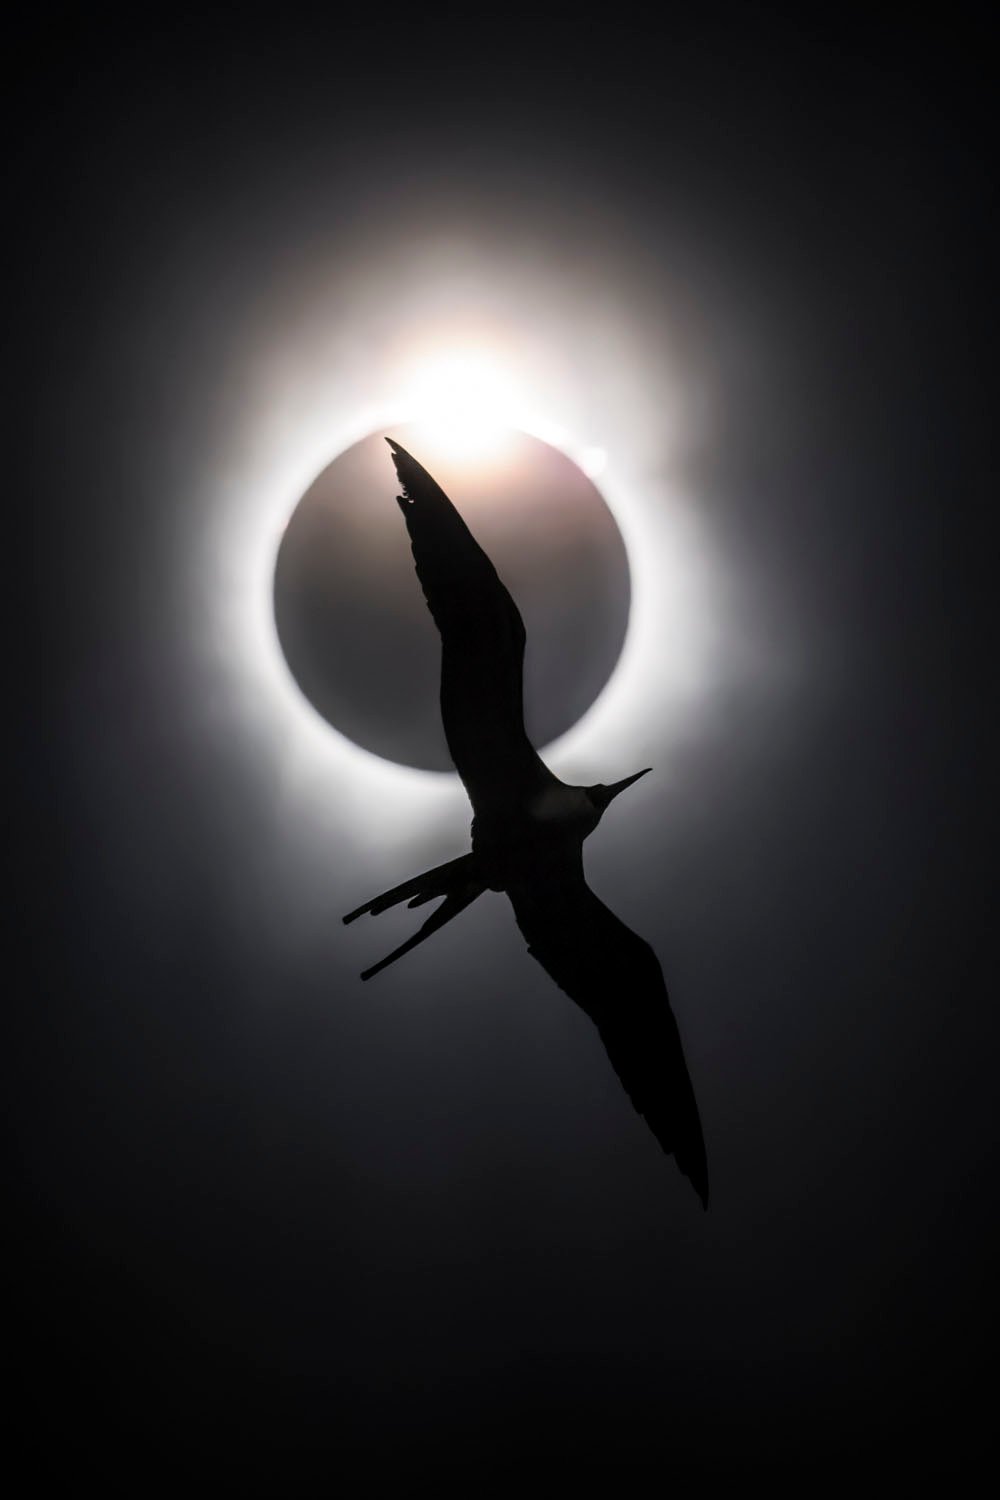 Silueta de un pájaro volando frente a un eclipse solar, creando una imagen dramática con las alas del pájaro extendidas sobre la brillante corona del sol.